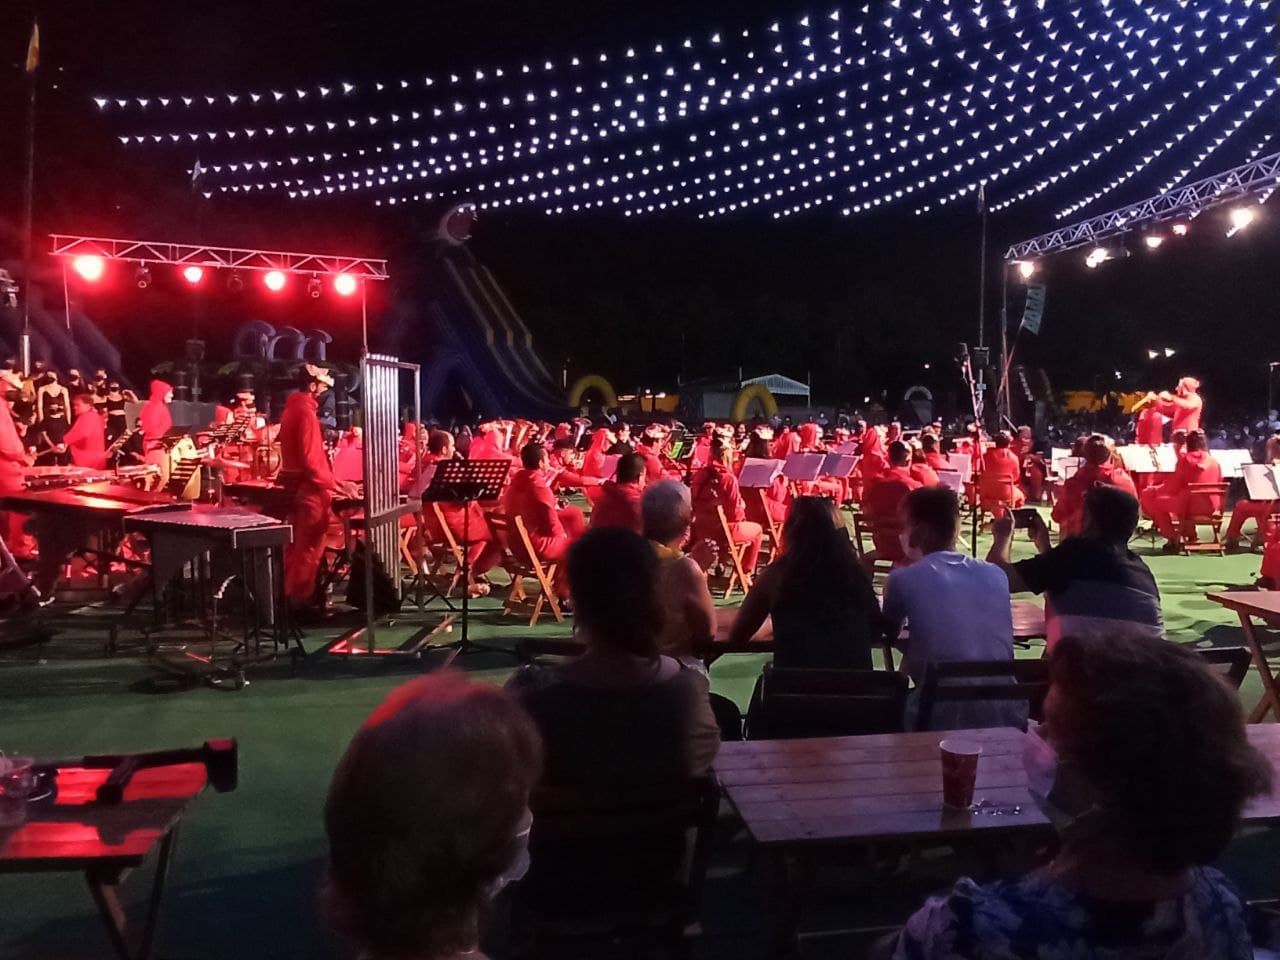 Concierto de bandas sonoras Insomnia – El Puerto de Santa María (Cádiz) – 27-07-2021